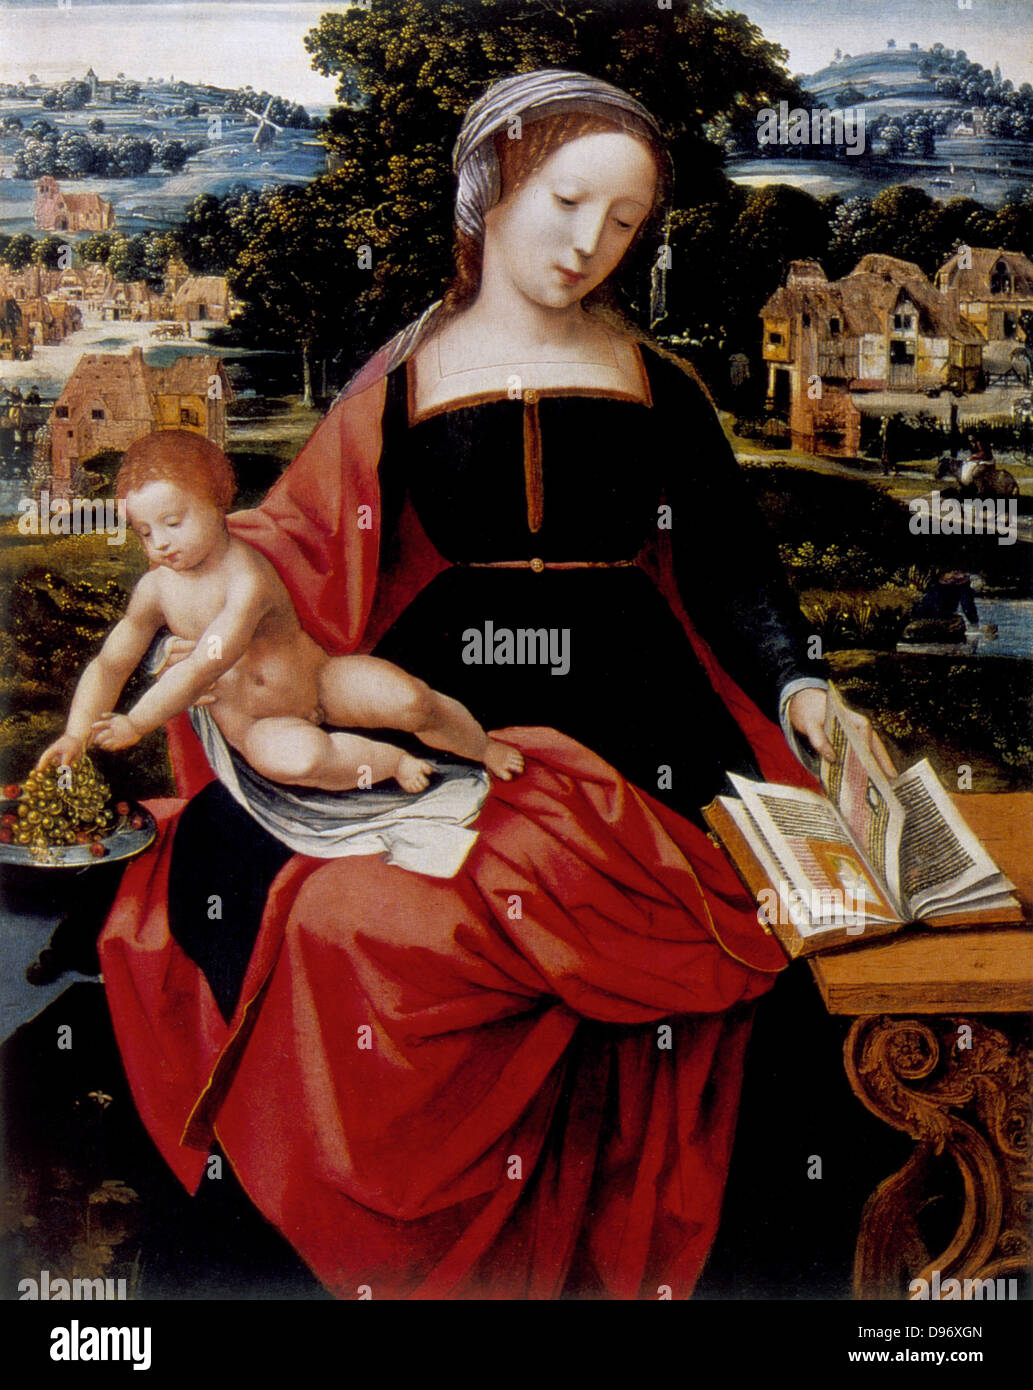 La Vierge et l'Enfant Jésus sur les genoux de Marie se penche pour prendre des raisins de lave tandis que Mary regarde au livre de prières illuminées. Anonyme : 16ème siècle. Huile sur bois. Banque D'Images